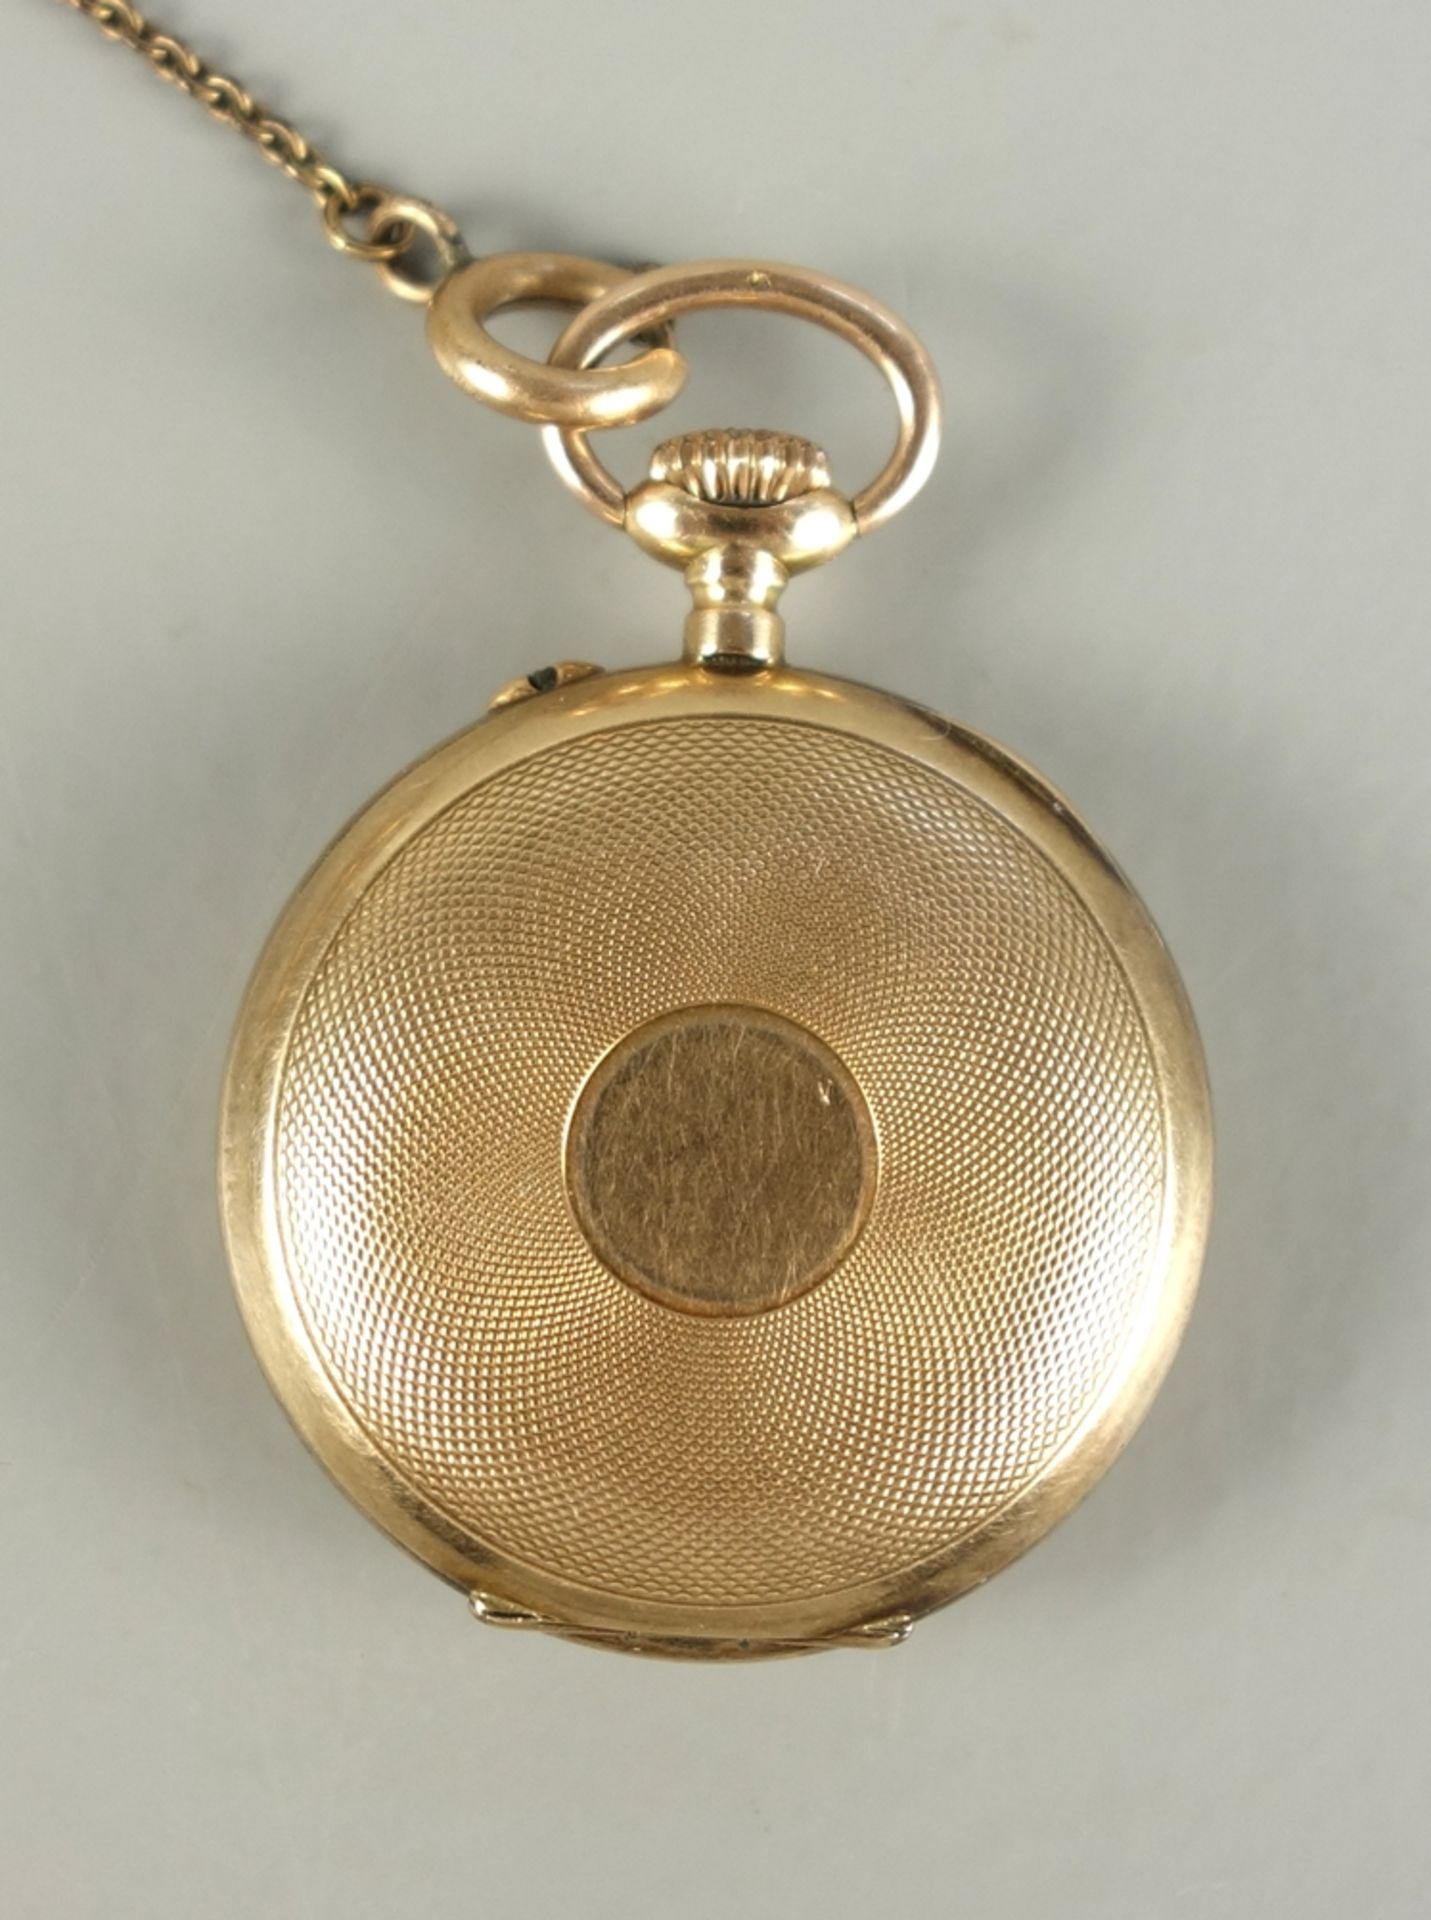 Damen-Taschenuhr, 585er Gelbgold, in Federzugarmband, um 1900 - Bild 2 aus 2